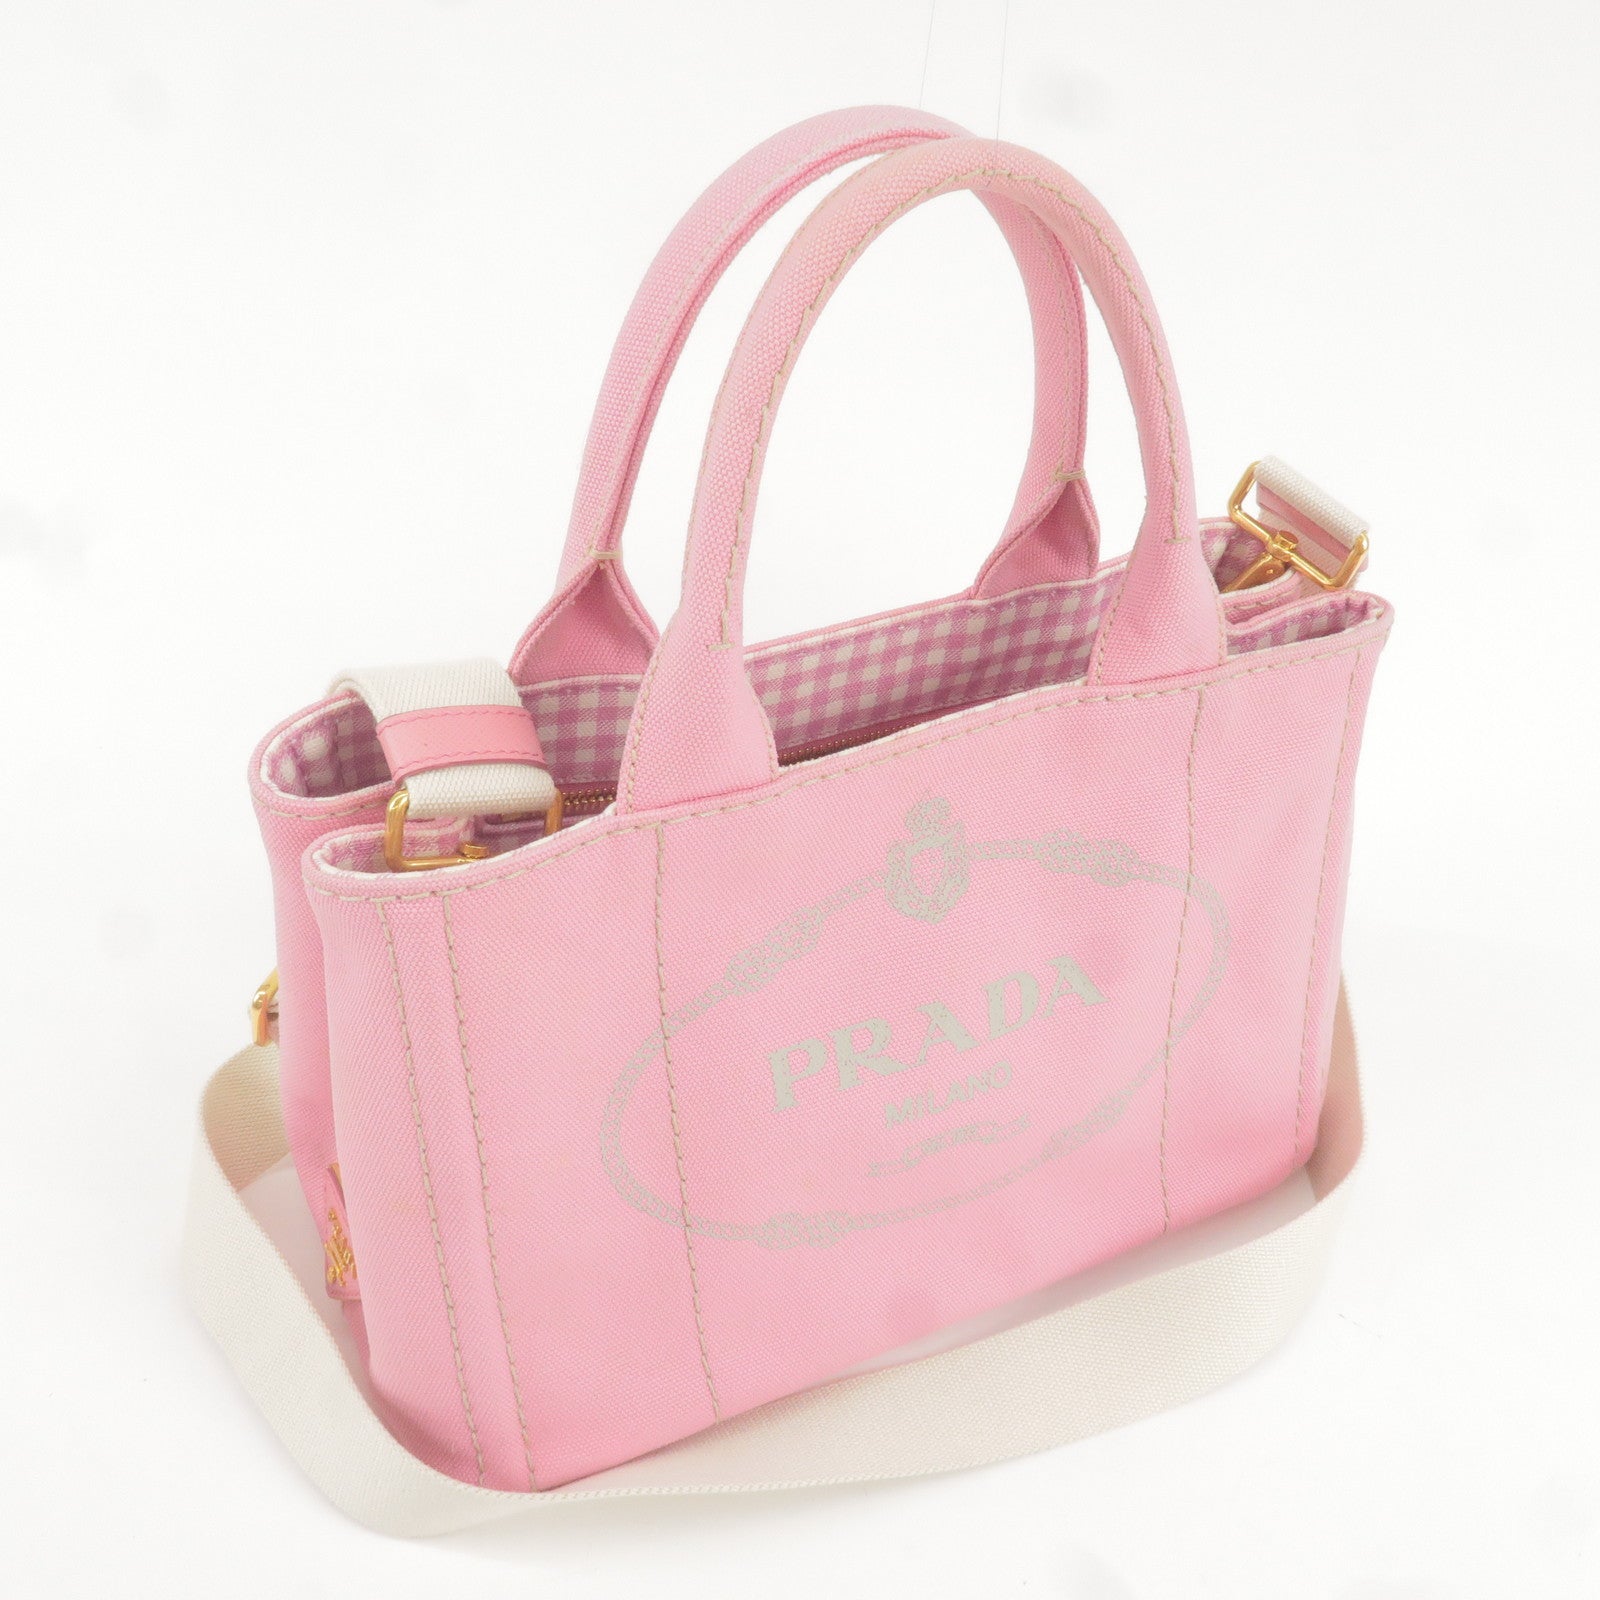 Prada Pink Tote Bags